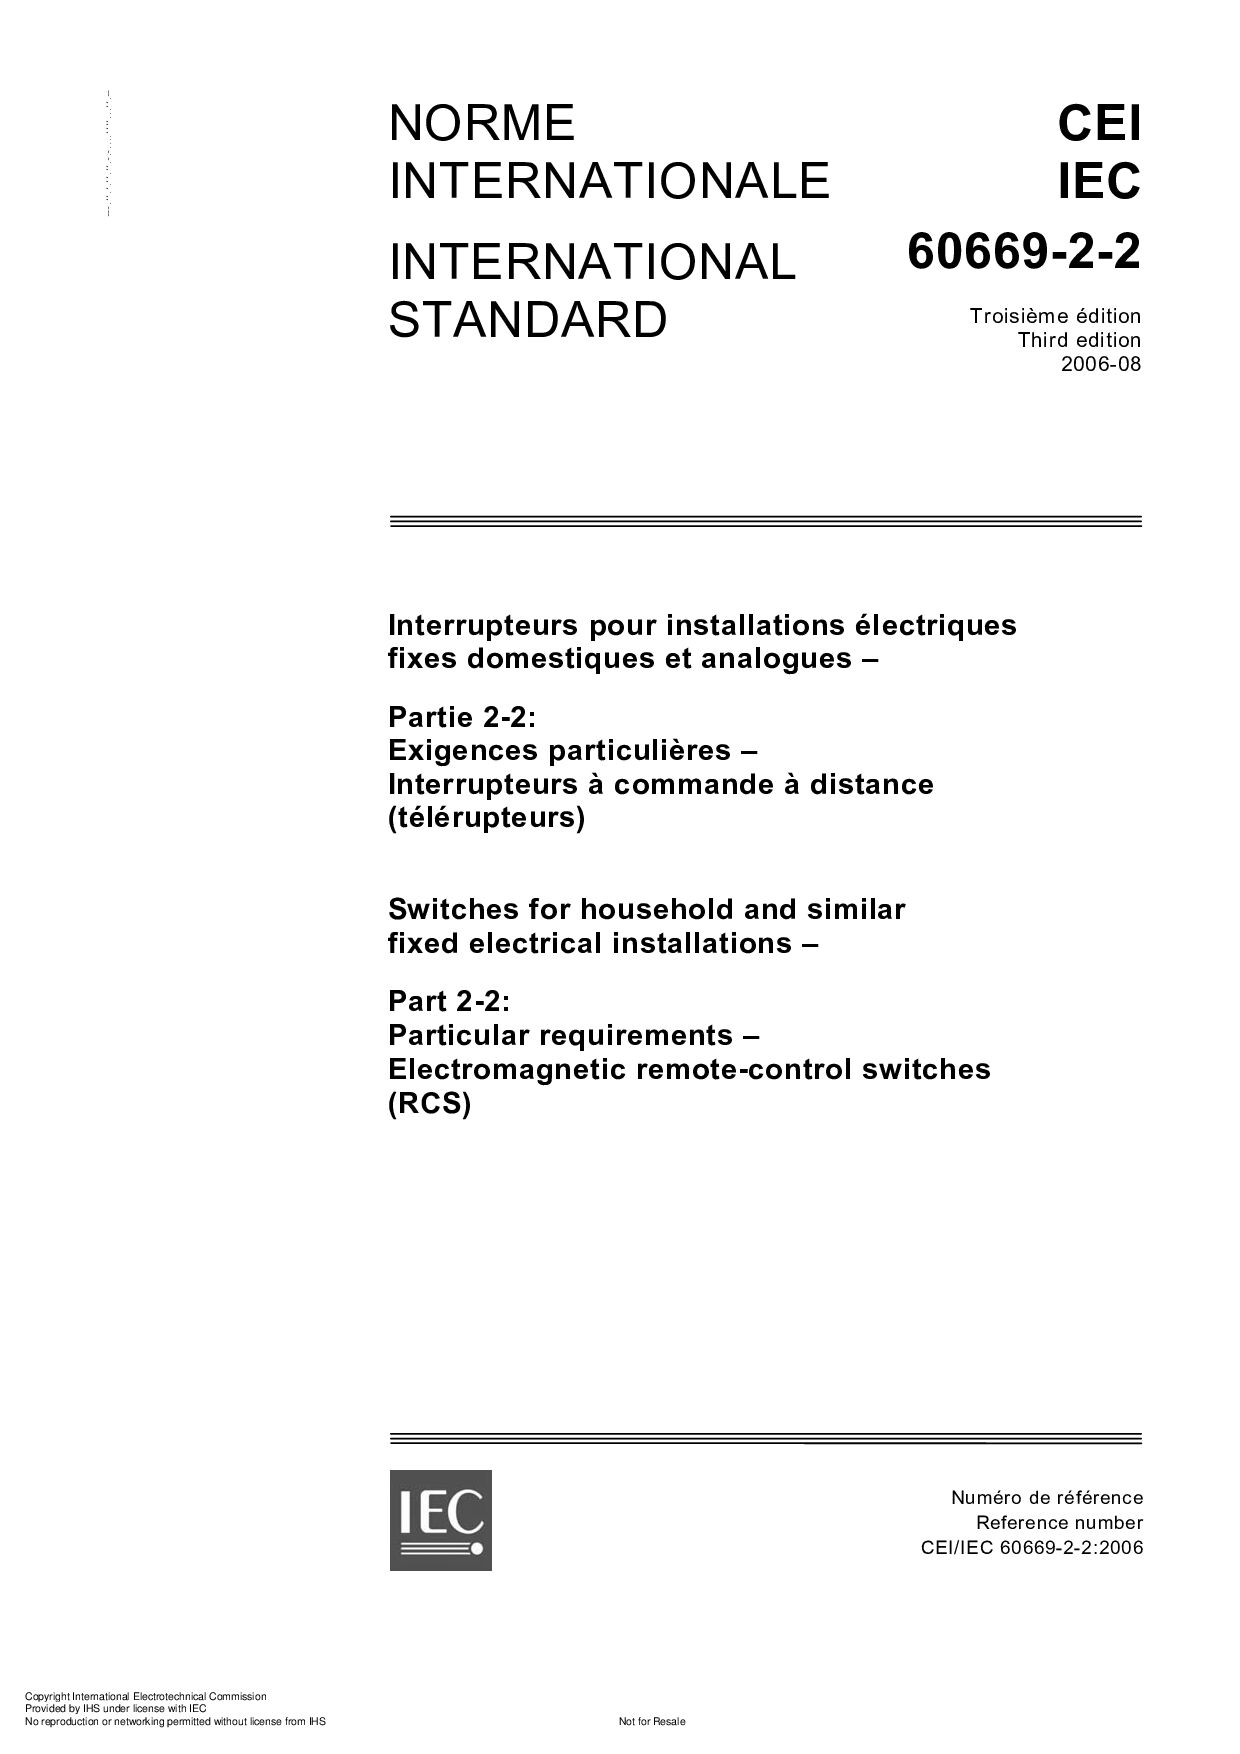 IEC 60669-2-2-2006